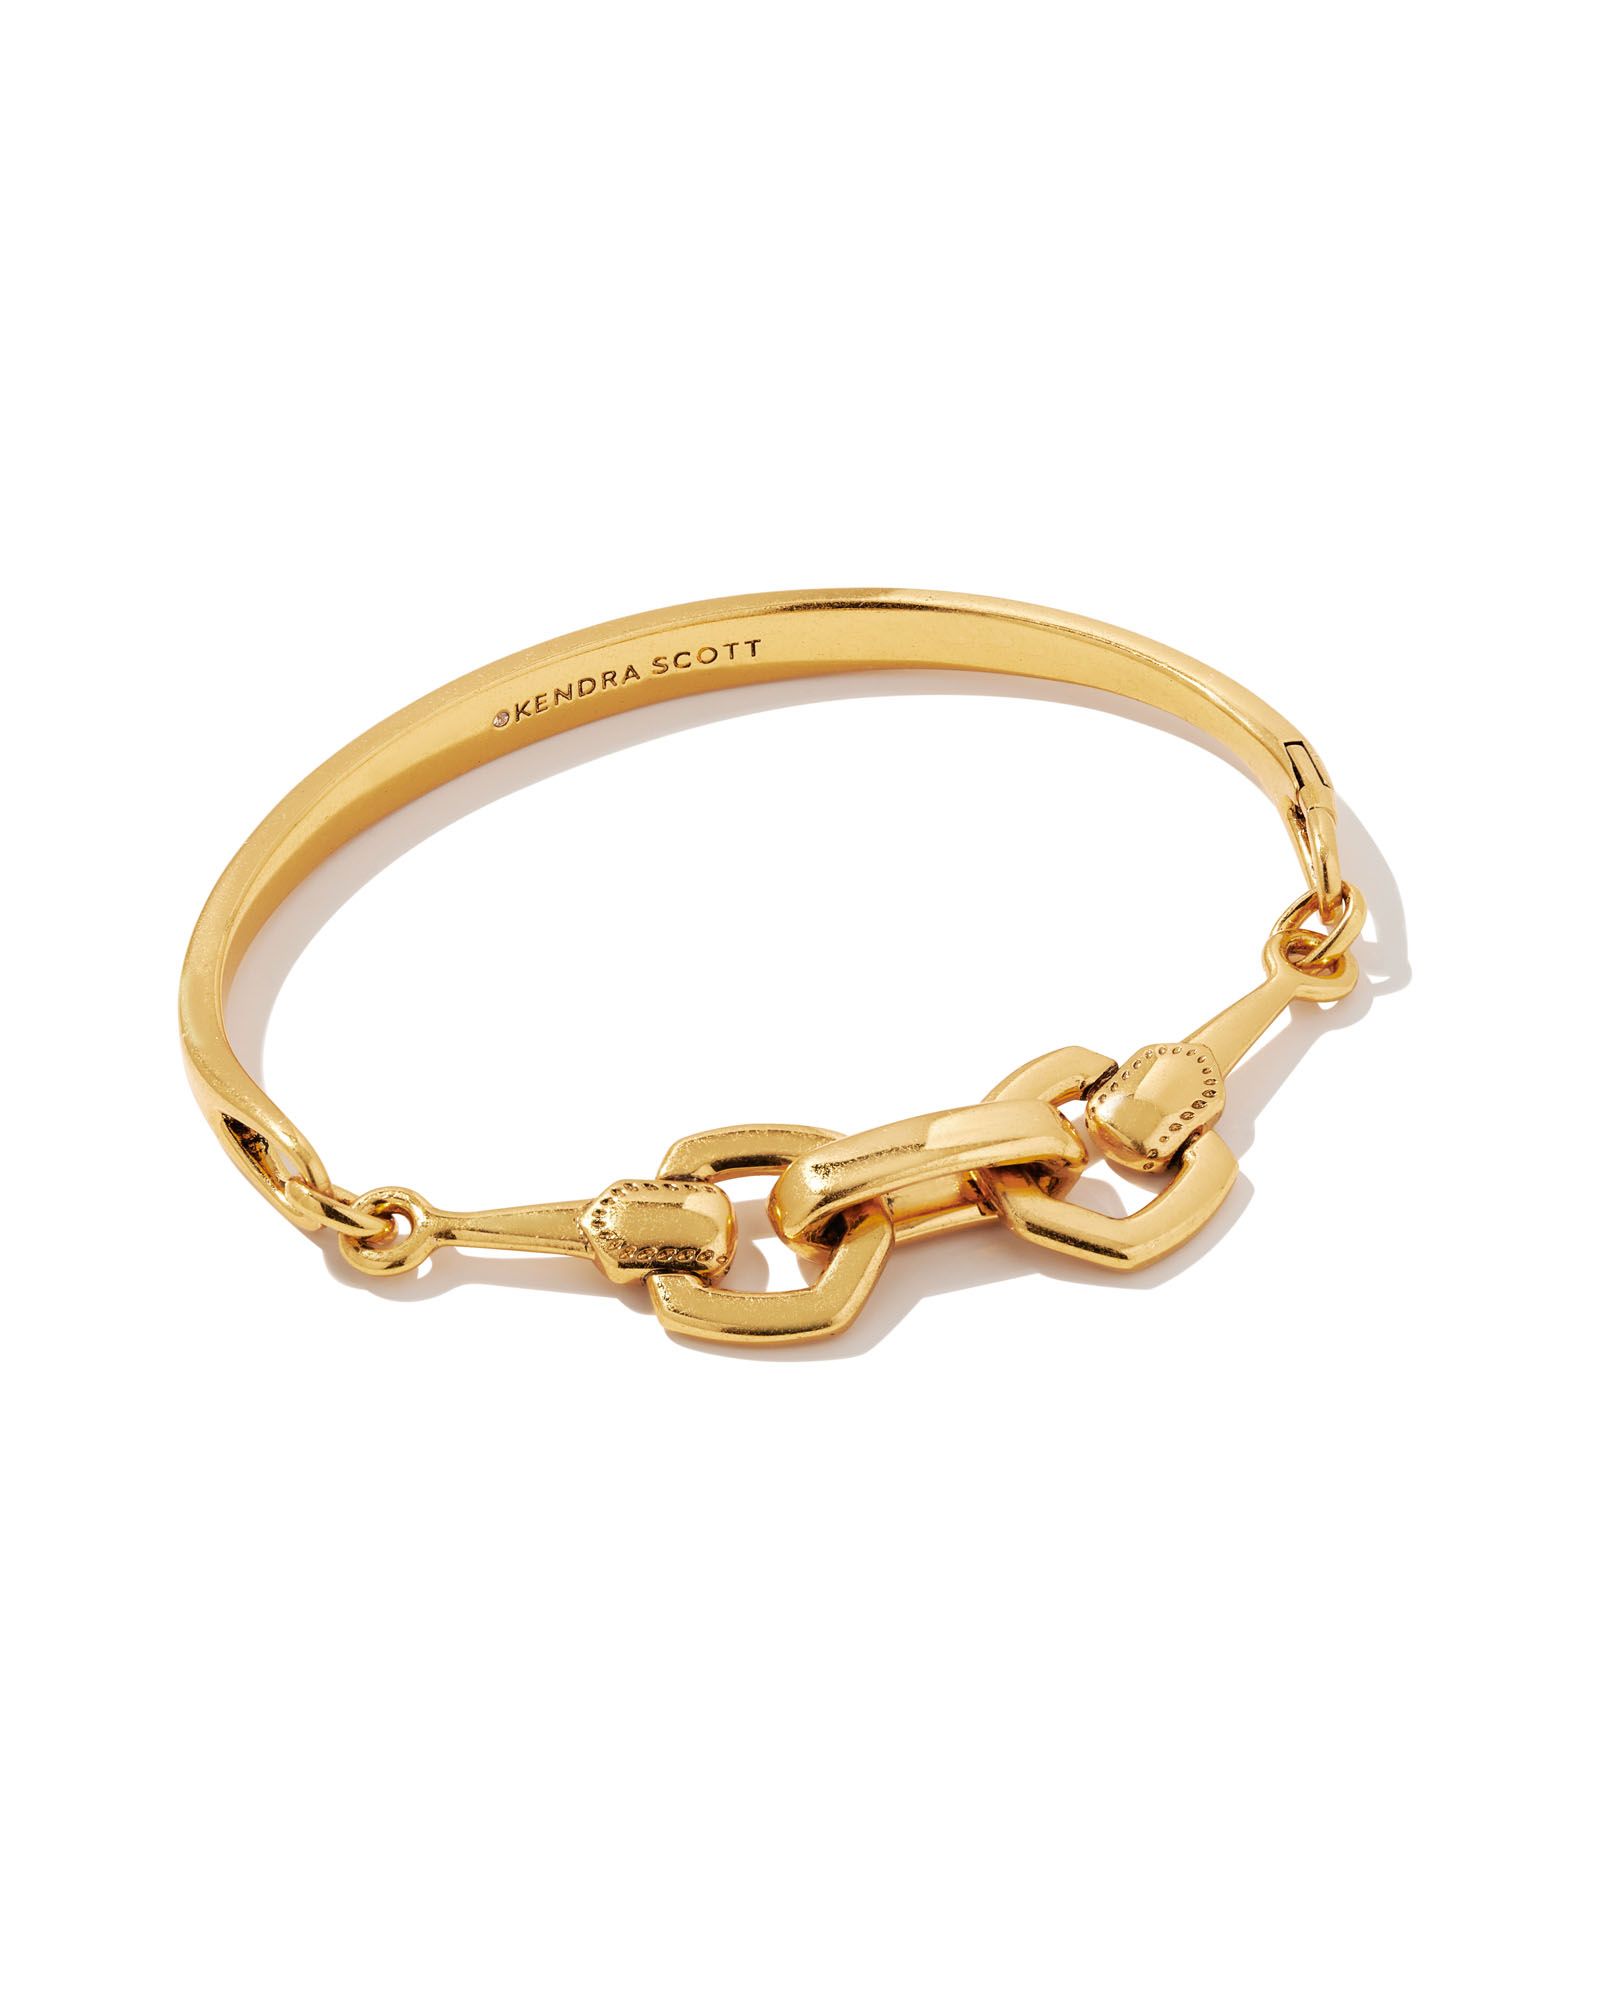 Beau Link Bracelet in Vintage Gold | Kendra Scott | Kendra Scott